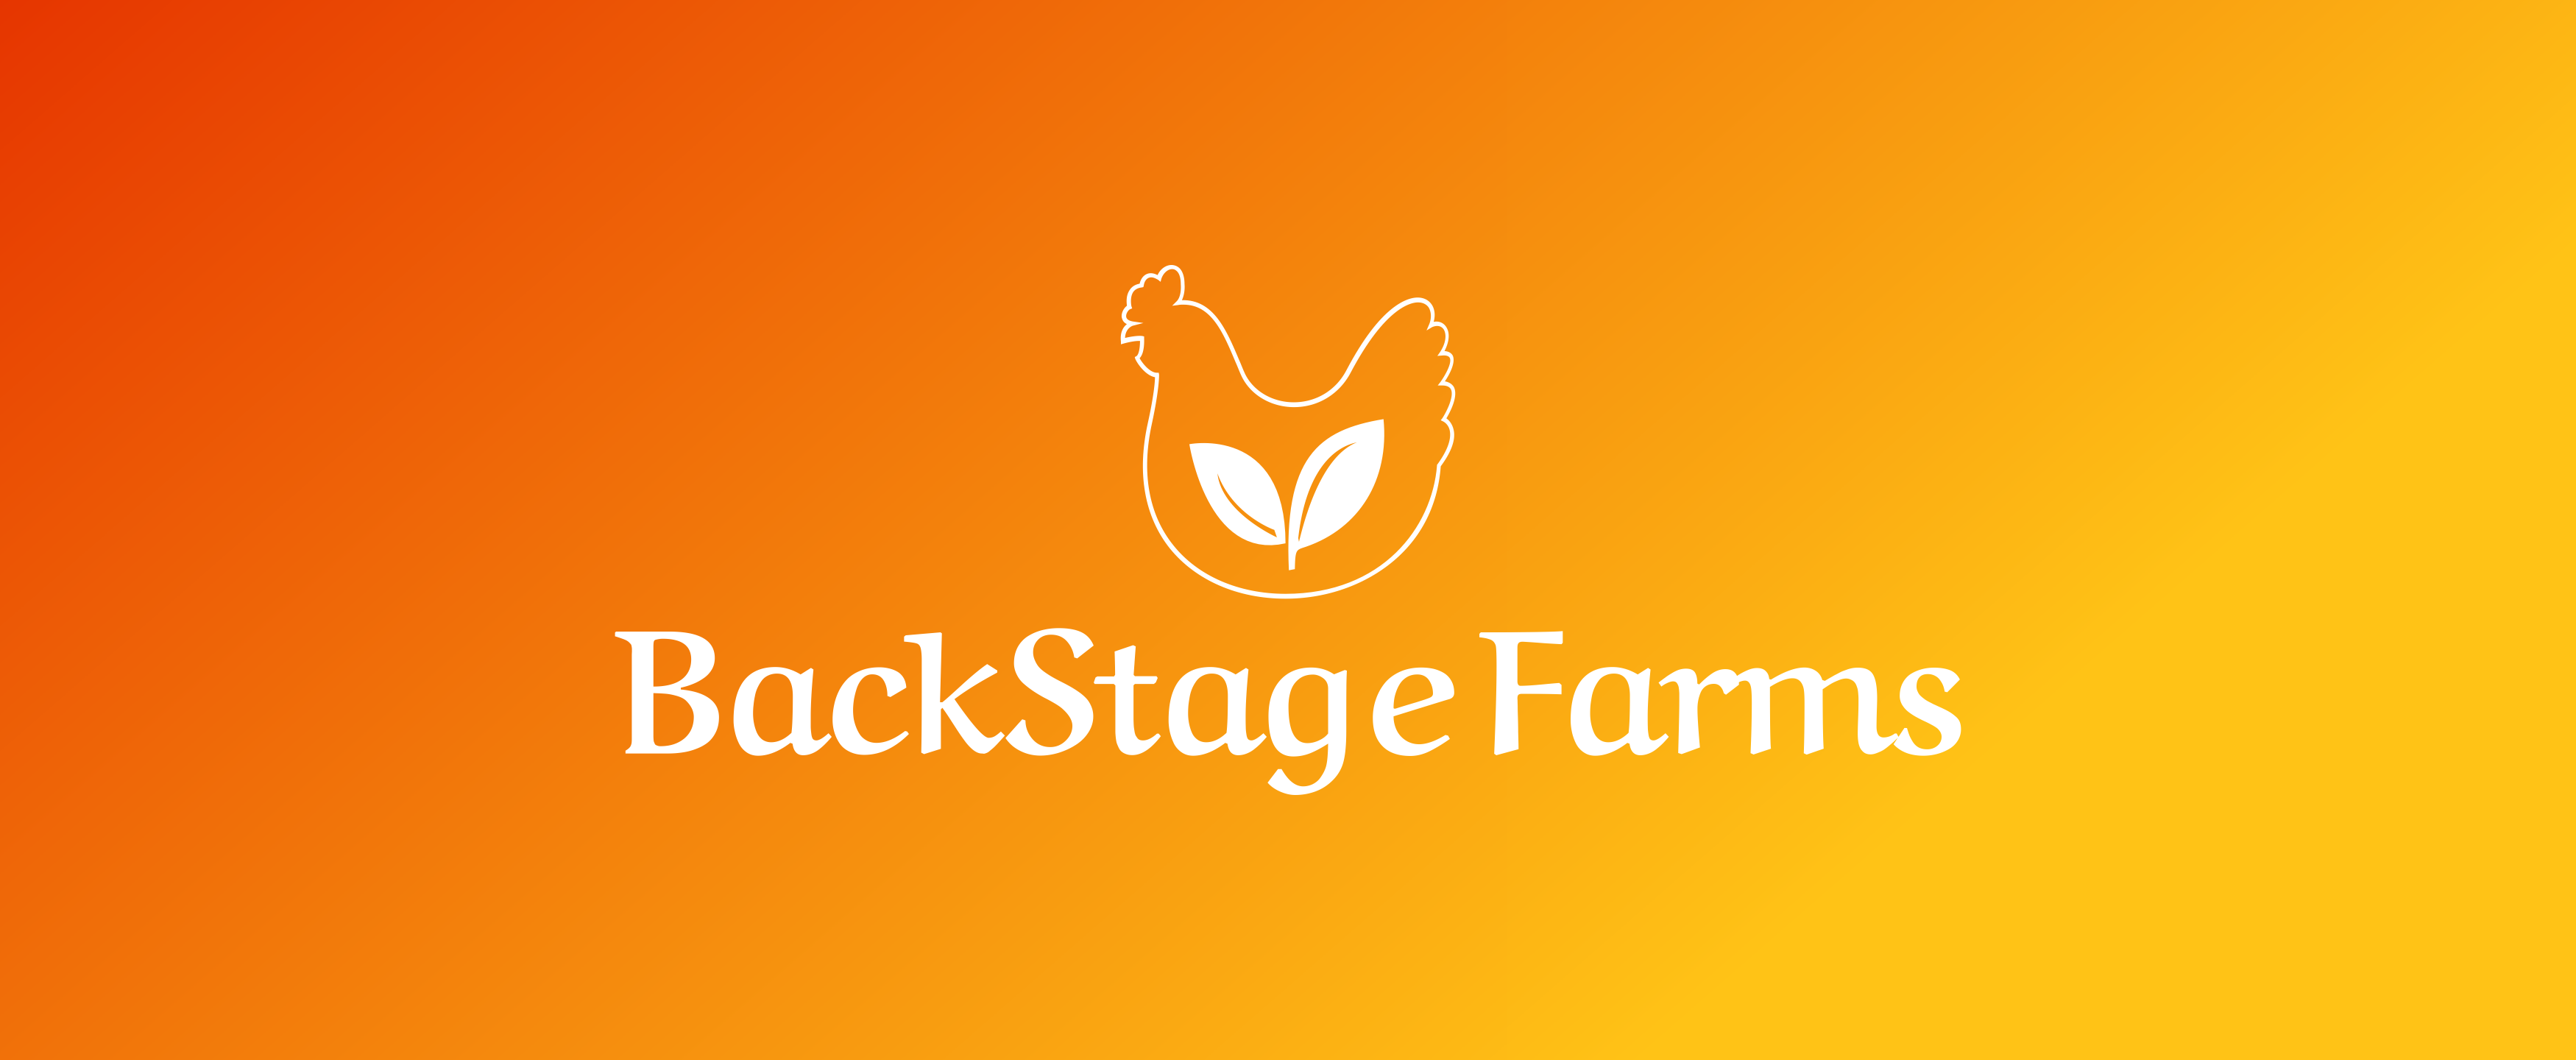            BACKSTAGE FARMS.COM